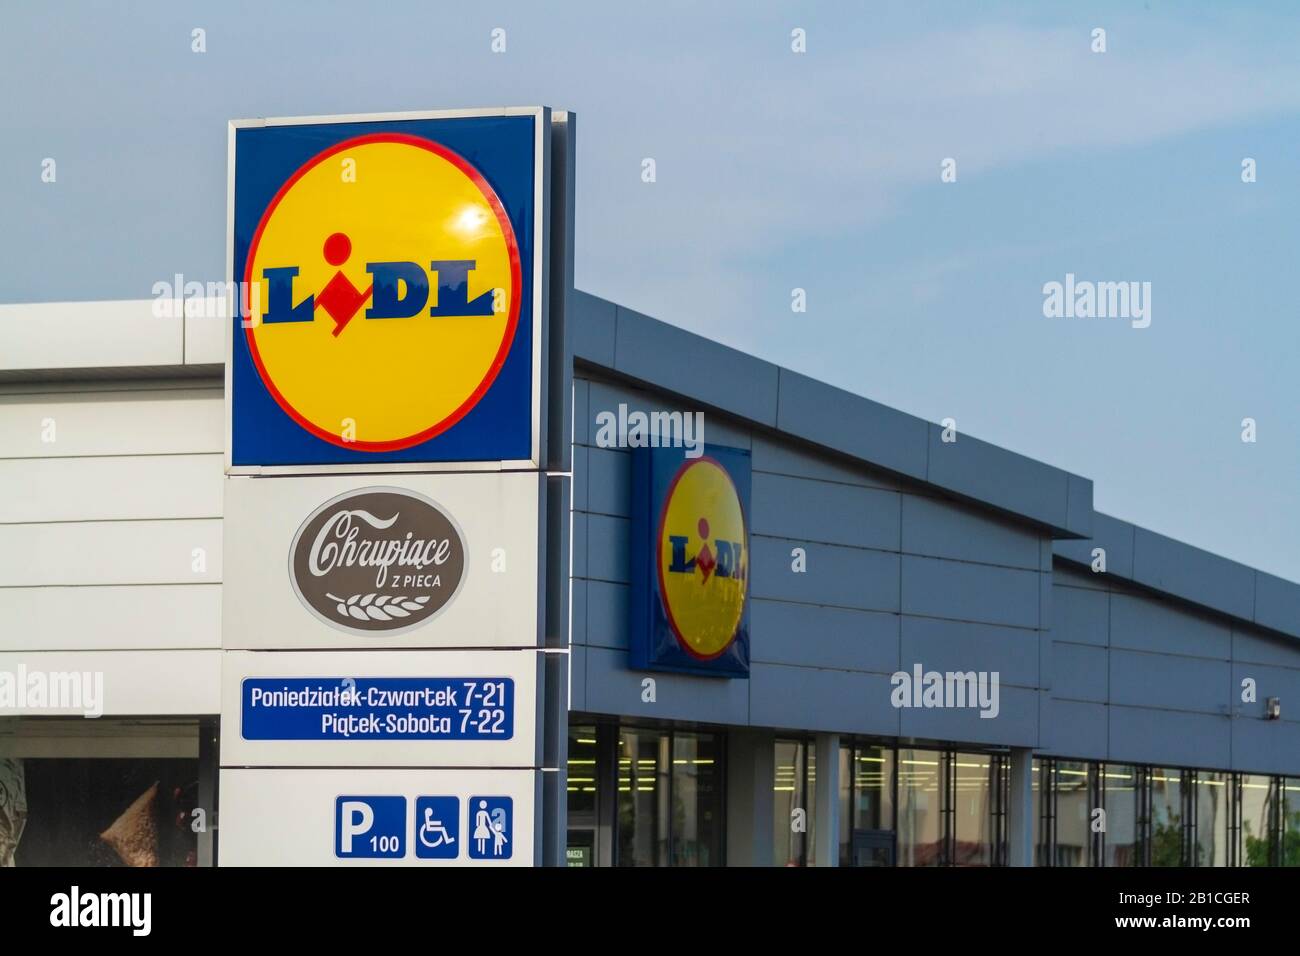 Zamosc / Pologne - 5 septembre 2018 : logo Lidl sur le supermarché Lidl. Lidl est une chaîne de supermarchés allemande. Banque D'Images